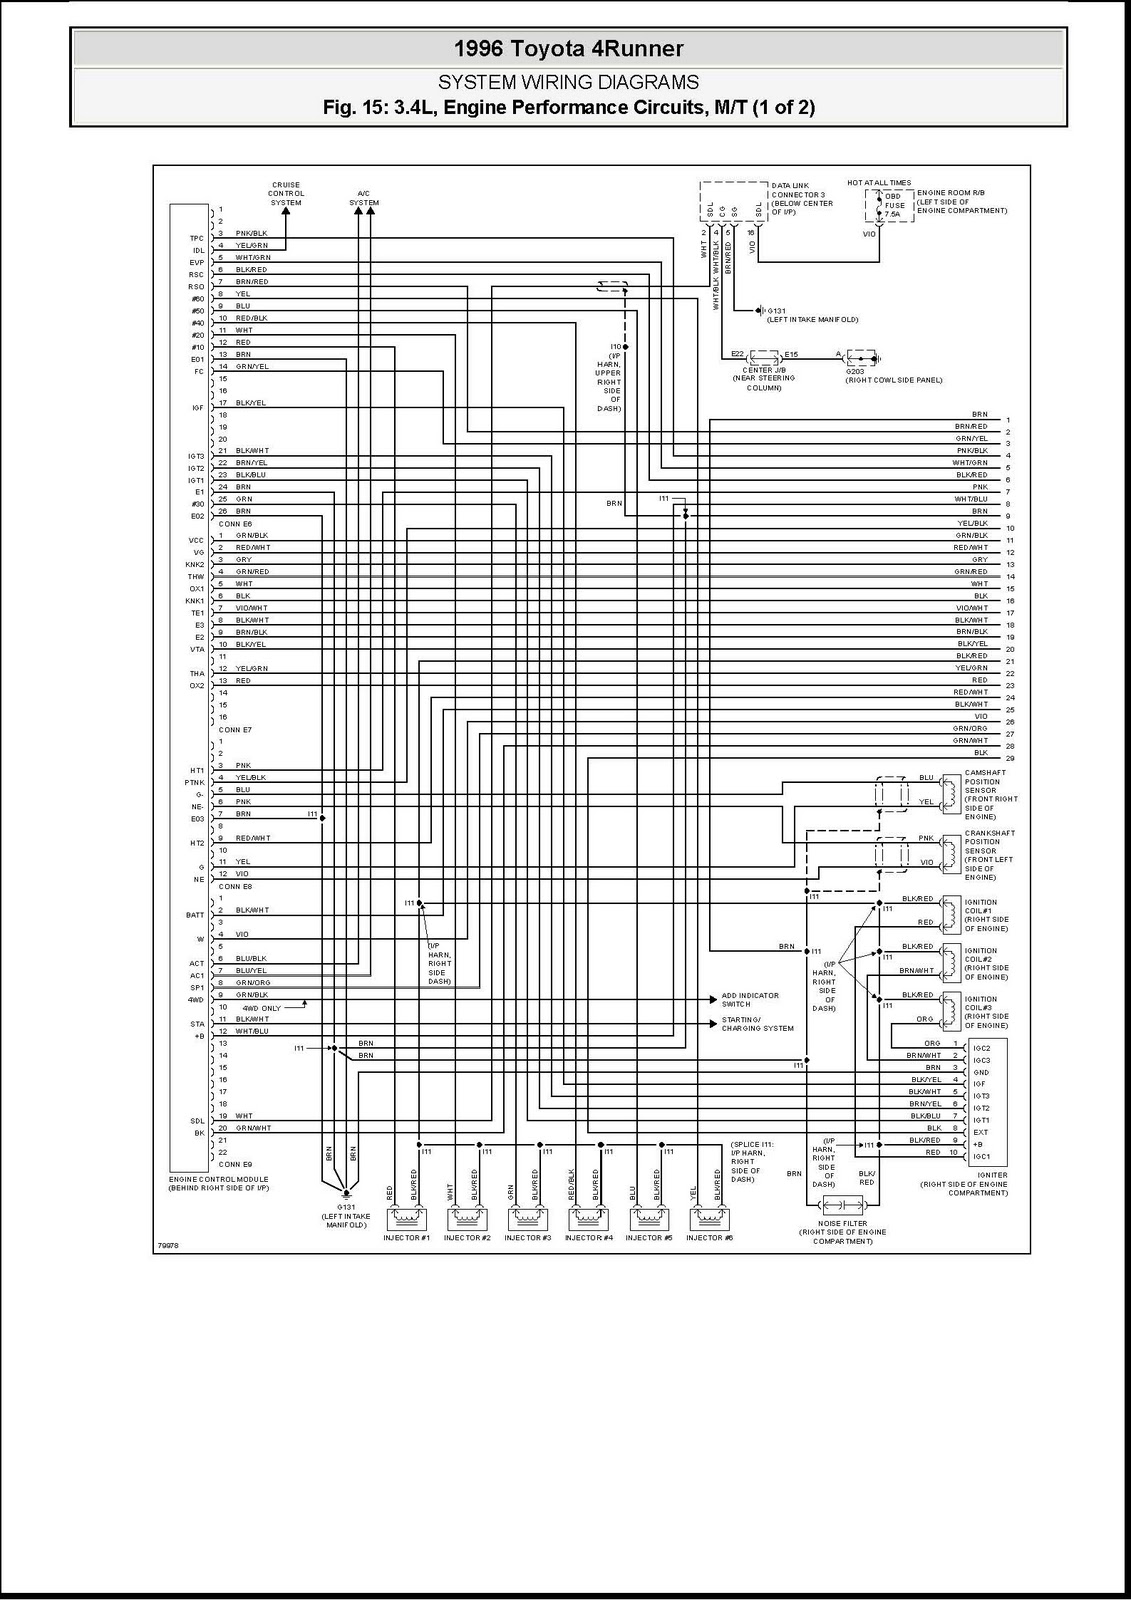 DDMP Automotriz: Diagrama Electrico Motor Toyota 5VZ-FE 1996 1987 ford f 150 wiring diagram ecu 